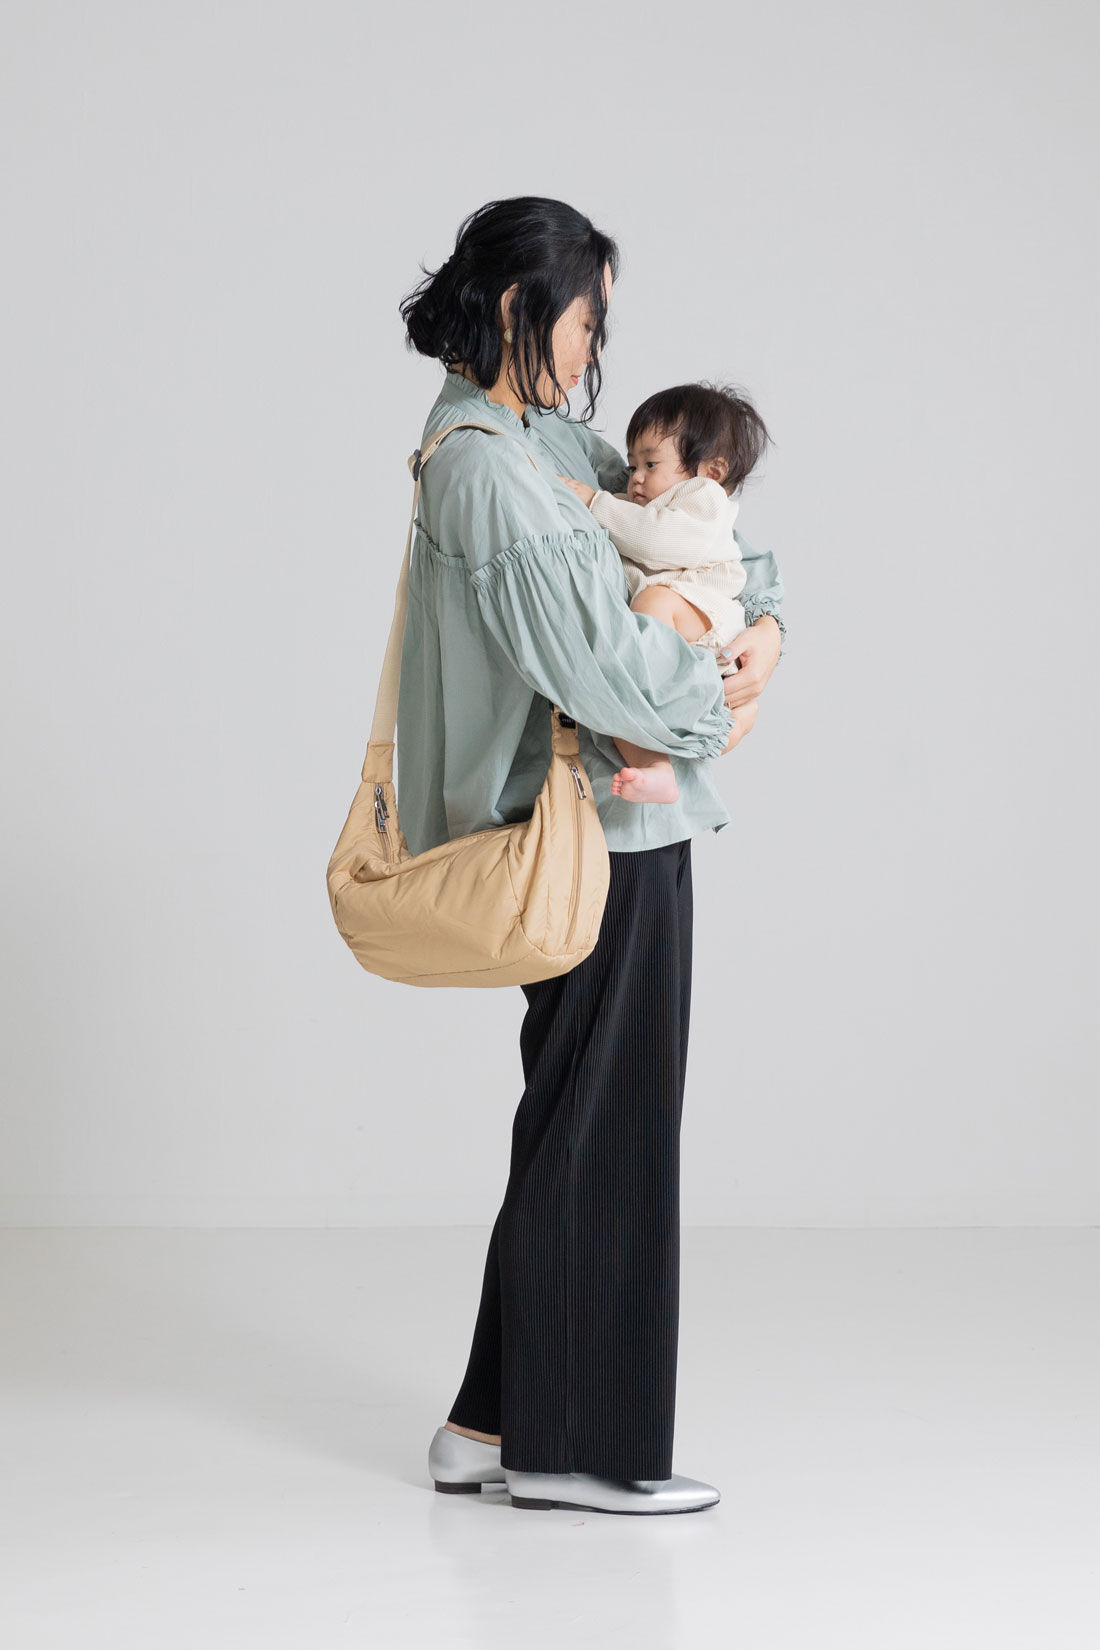 フェリシモMama|［Mama select］からだに沿う　二部屋仕様のやわらかショルダーバッグ〈ベージュ〉|赤ちゃんを抱っこするママの背中に寄り添う、ちょうどよい大きさとやわらかさ